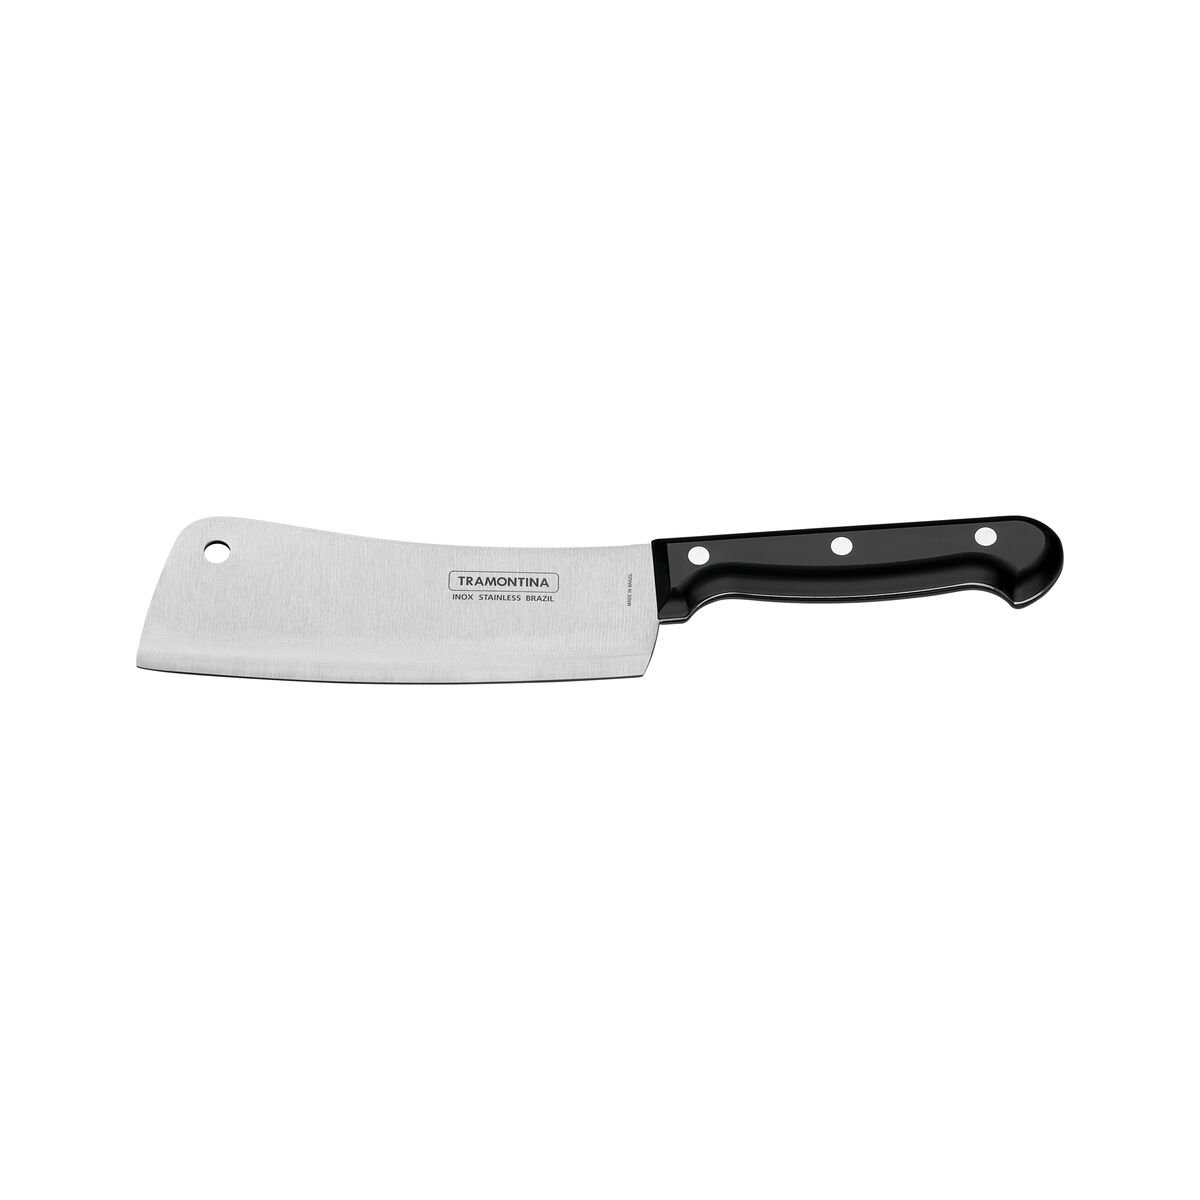  JARVISTAR Cuchillo de chef de 8 pulgadas: cuchillo de cocina  profesional - Soporte corto forjado de acero inoxidable de alto carbono  ultra afilado - Cuchillo de chef mango ergonómico para cortar